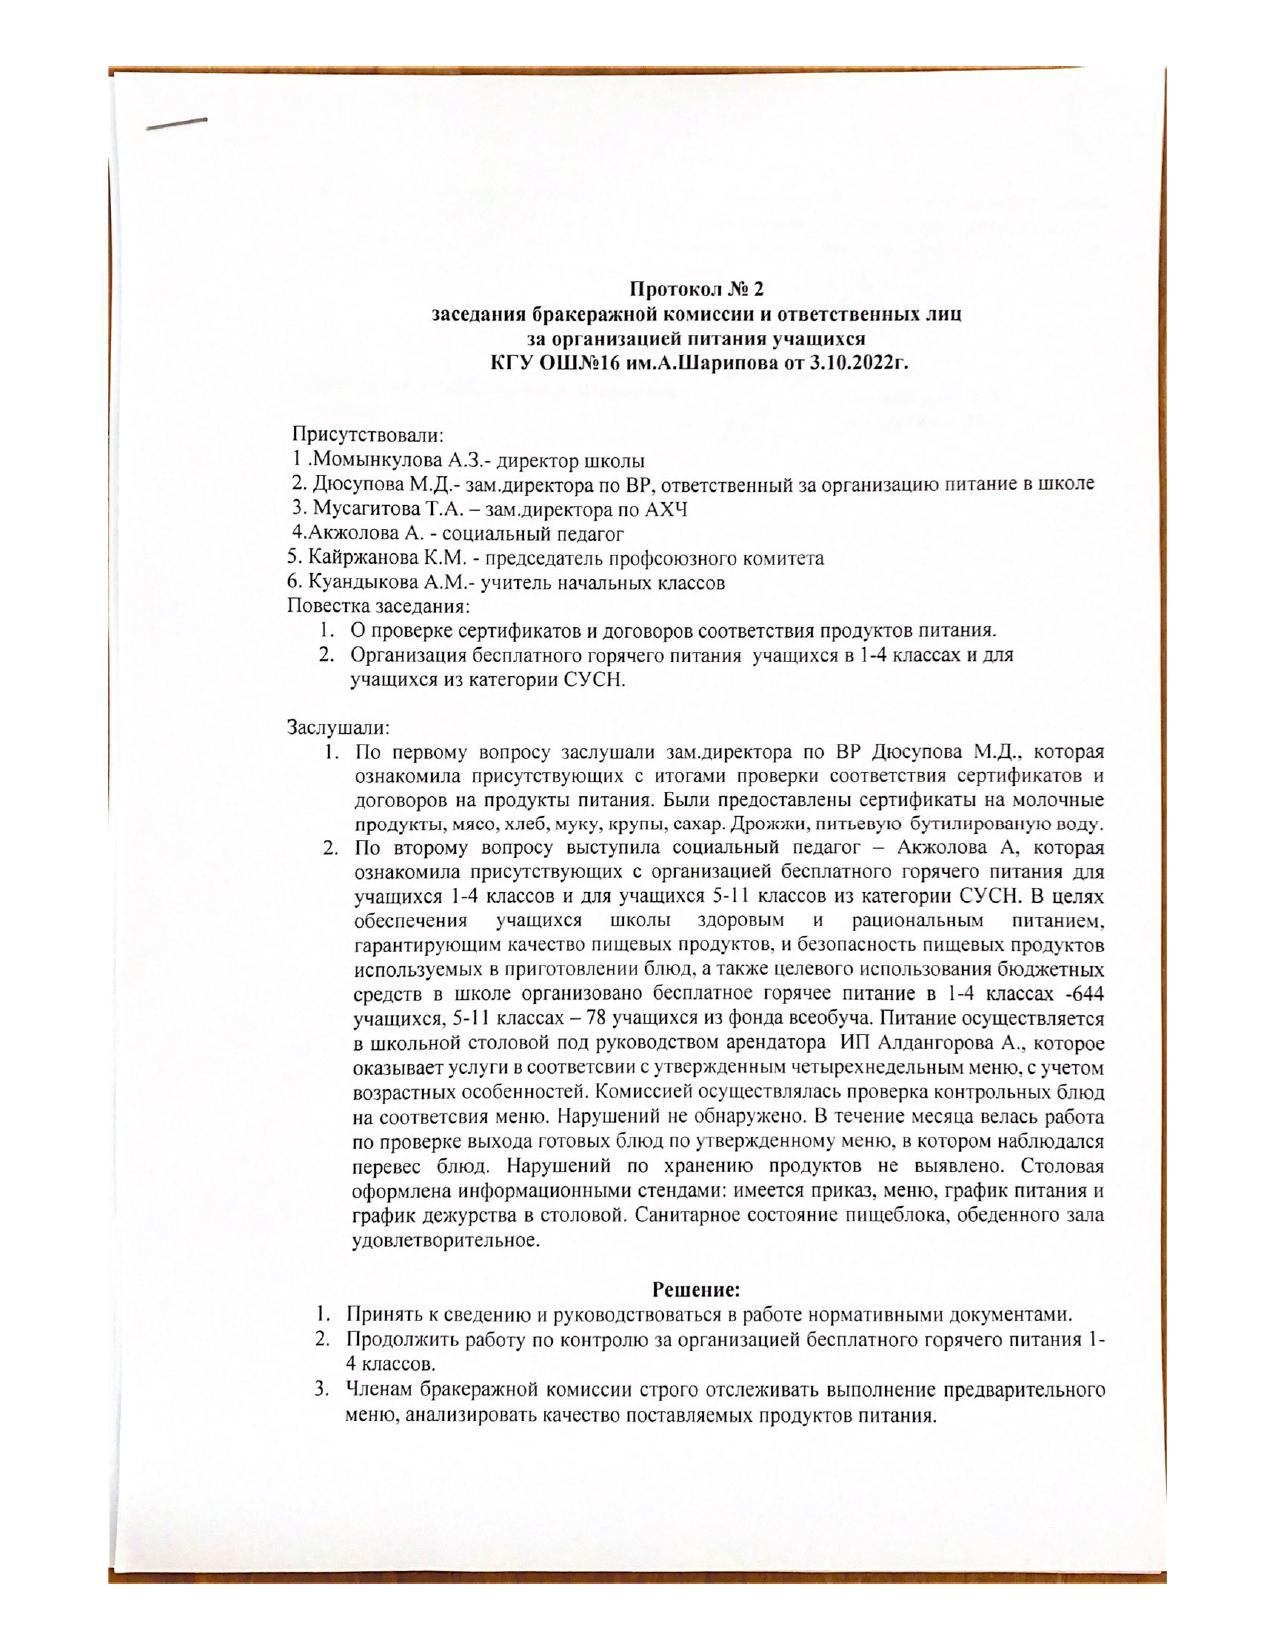 Протокол №2 заседания бракеражной комиссии  и ответственных лиц зв организацей питания учащихся